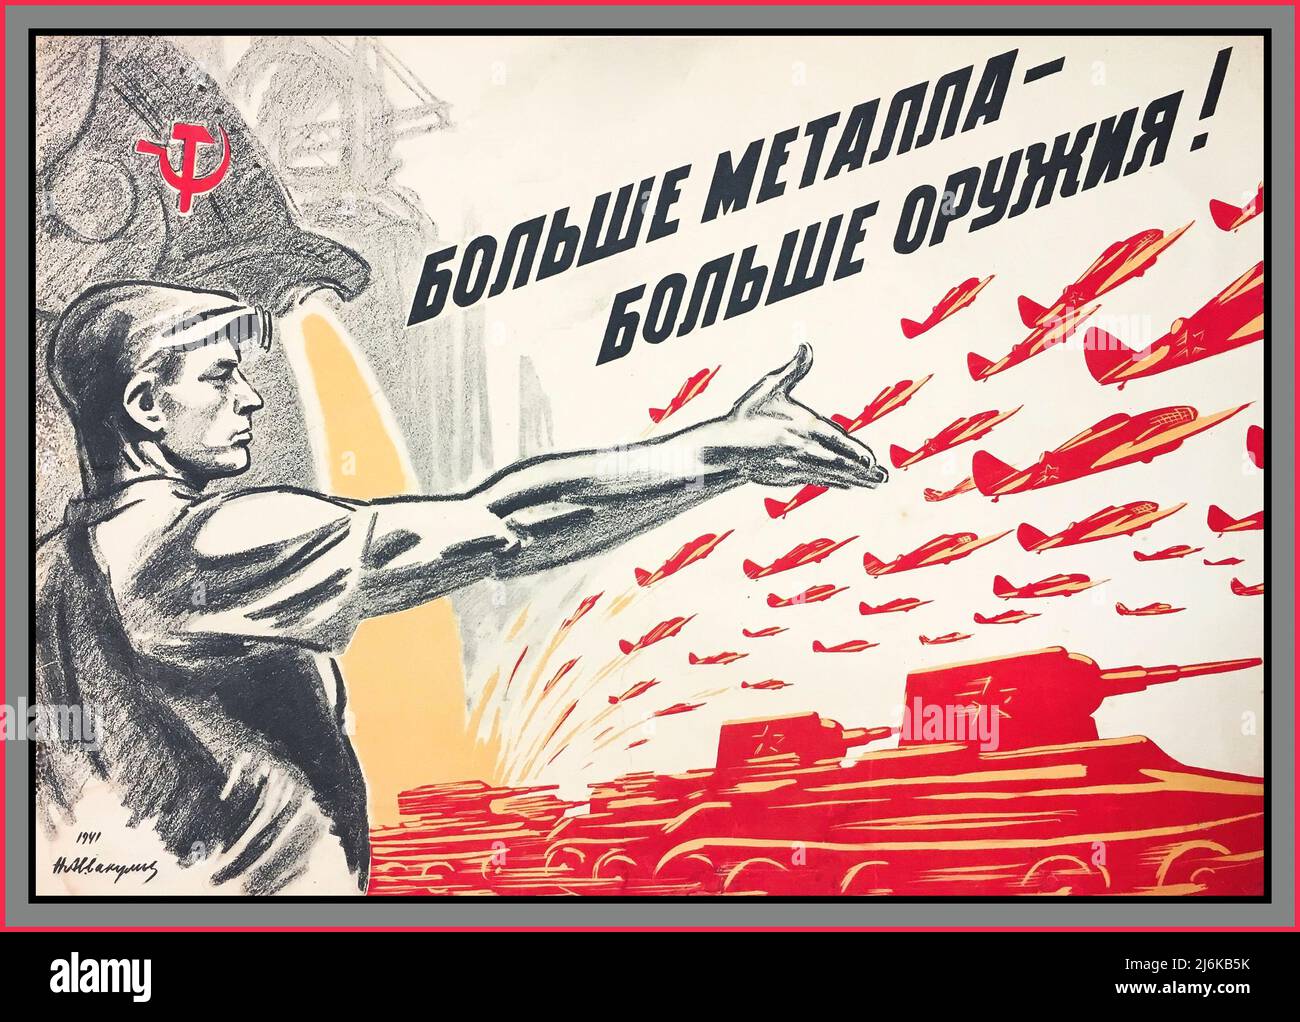 Russe Vintage WW2 1941 Poster de propagande 'plus de métal - plus d'armes!' Une affiche motivationnelle pour une production industrielle plus importante pour soutenir l'effort de guerre contre les tanks et les plans de guerre de l'Allemagne nazie. Union soviétique Russie URSS CCCP 1940s Seconde Guerre mondiale Banque D'Images